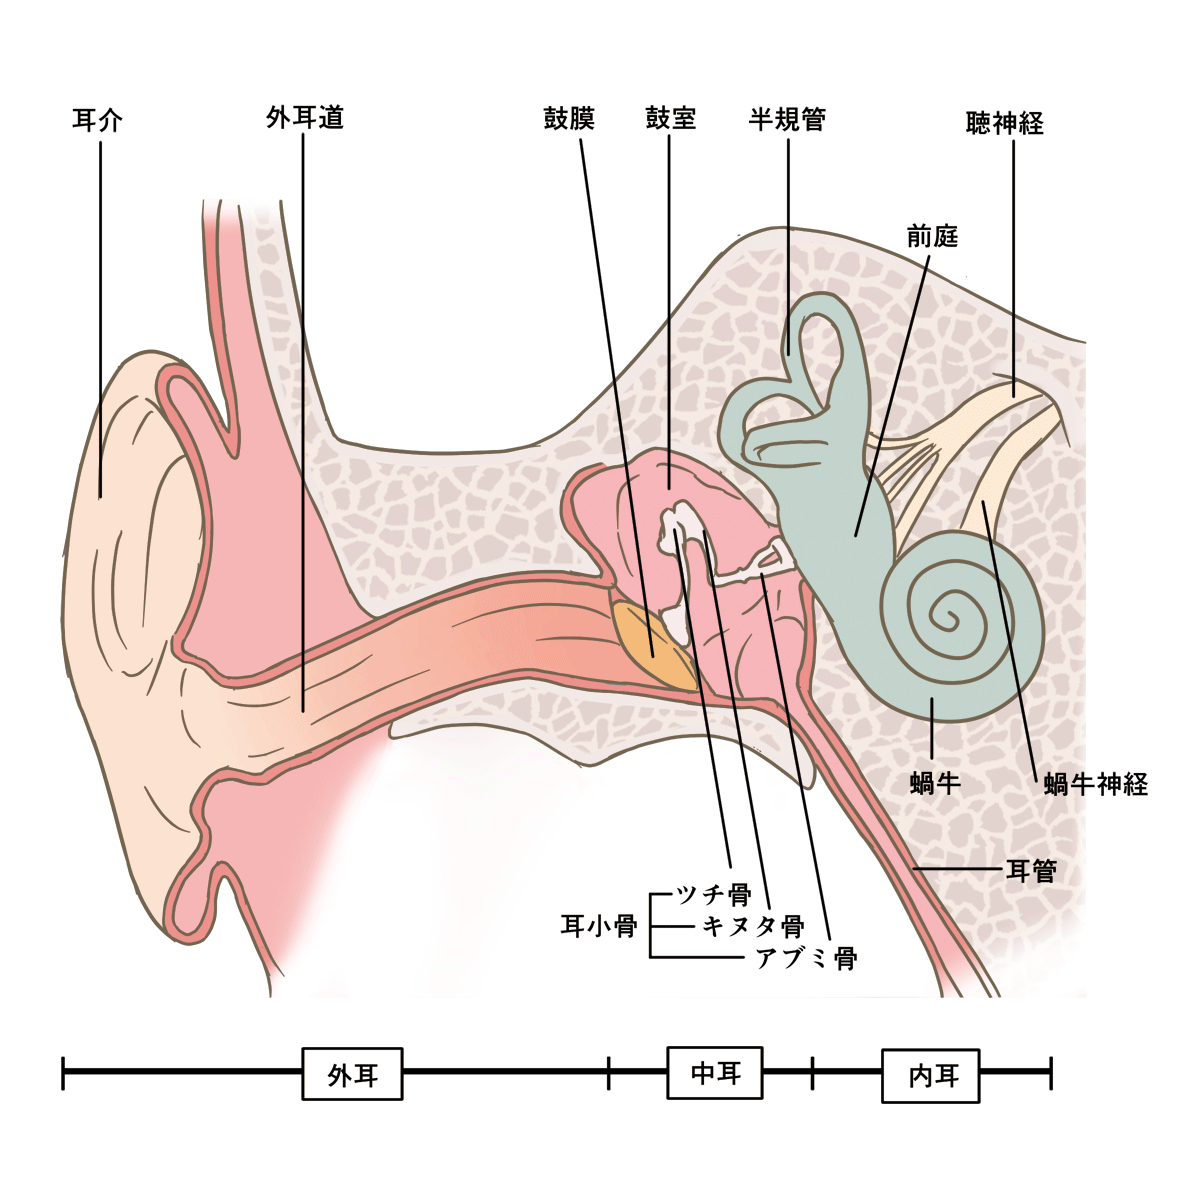 飲む と が 唾 を バリバリ 耳 耳の奥で変な音！唾を飲むと「バリバリ」寝る時に「ザーザー」…耳鼻科に行った診断結果は？